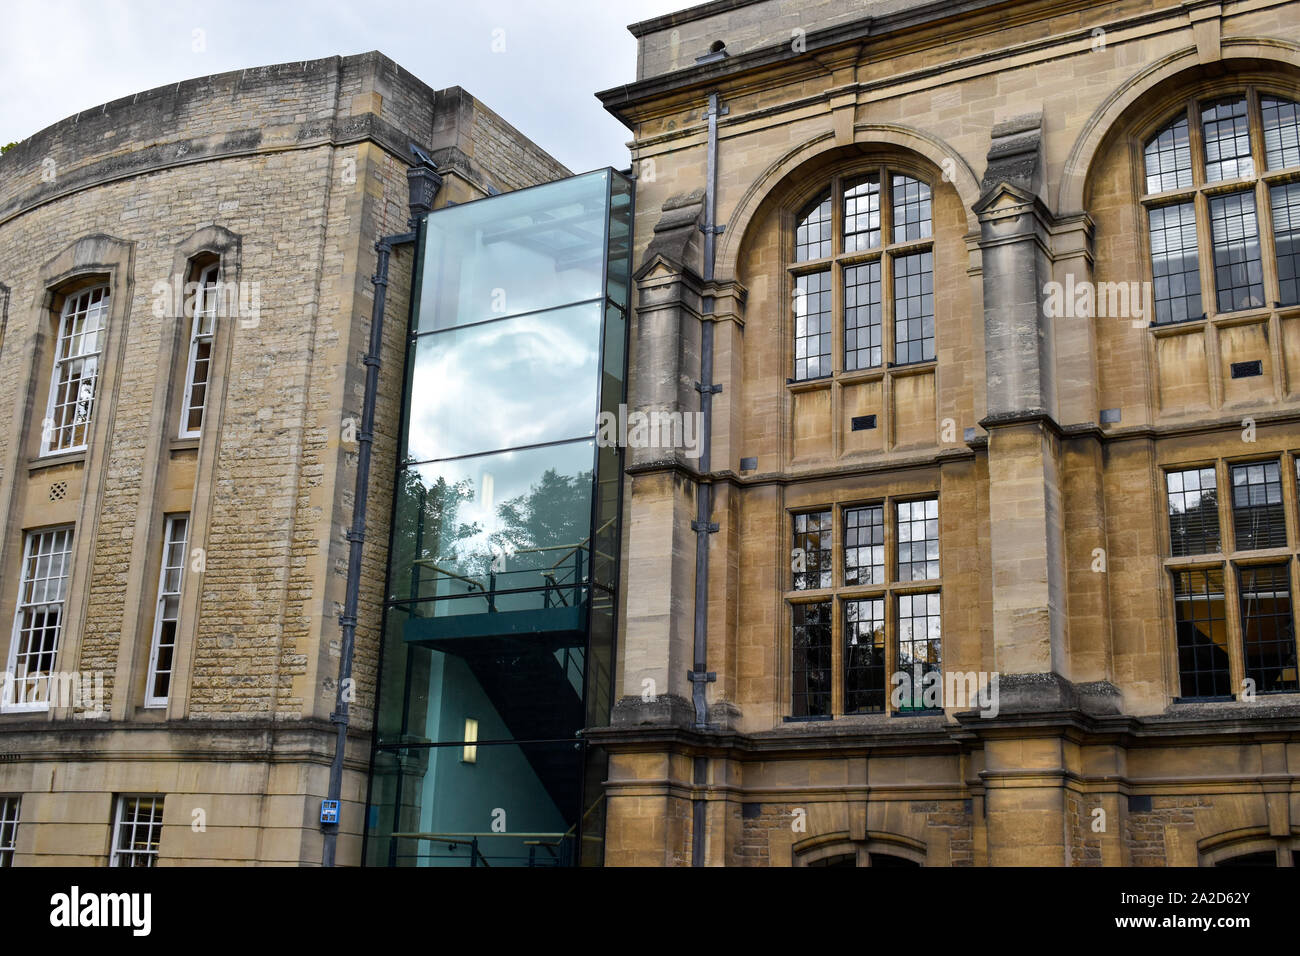 L'architecture ancienne et contemporaine (Radcliffe) Bibliothèque des sciences dans une rue d'Oxford, UK Banque D'Images